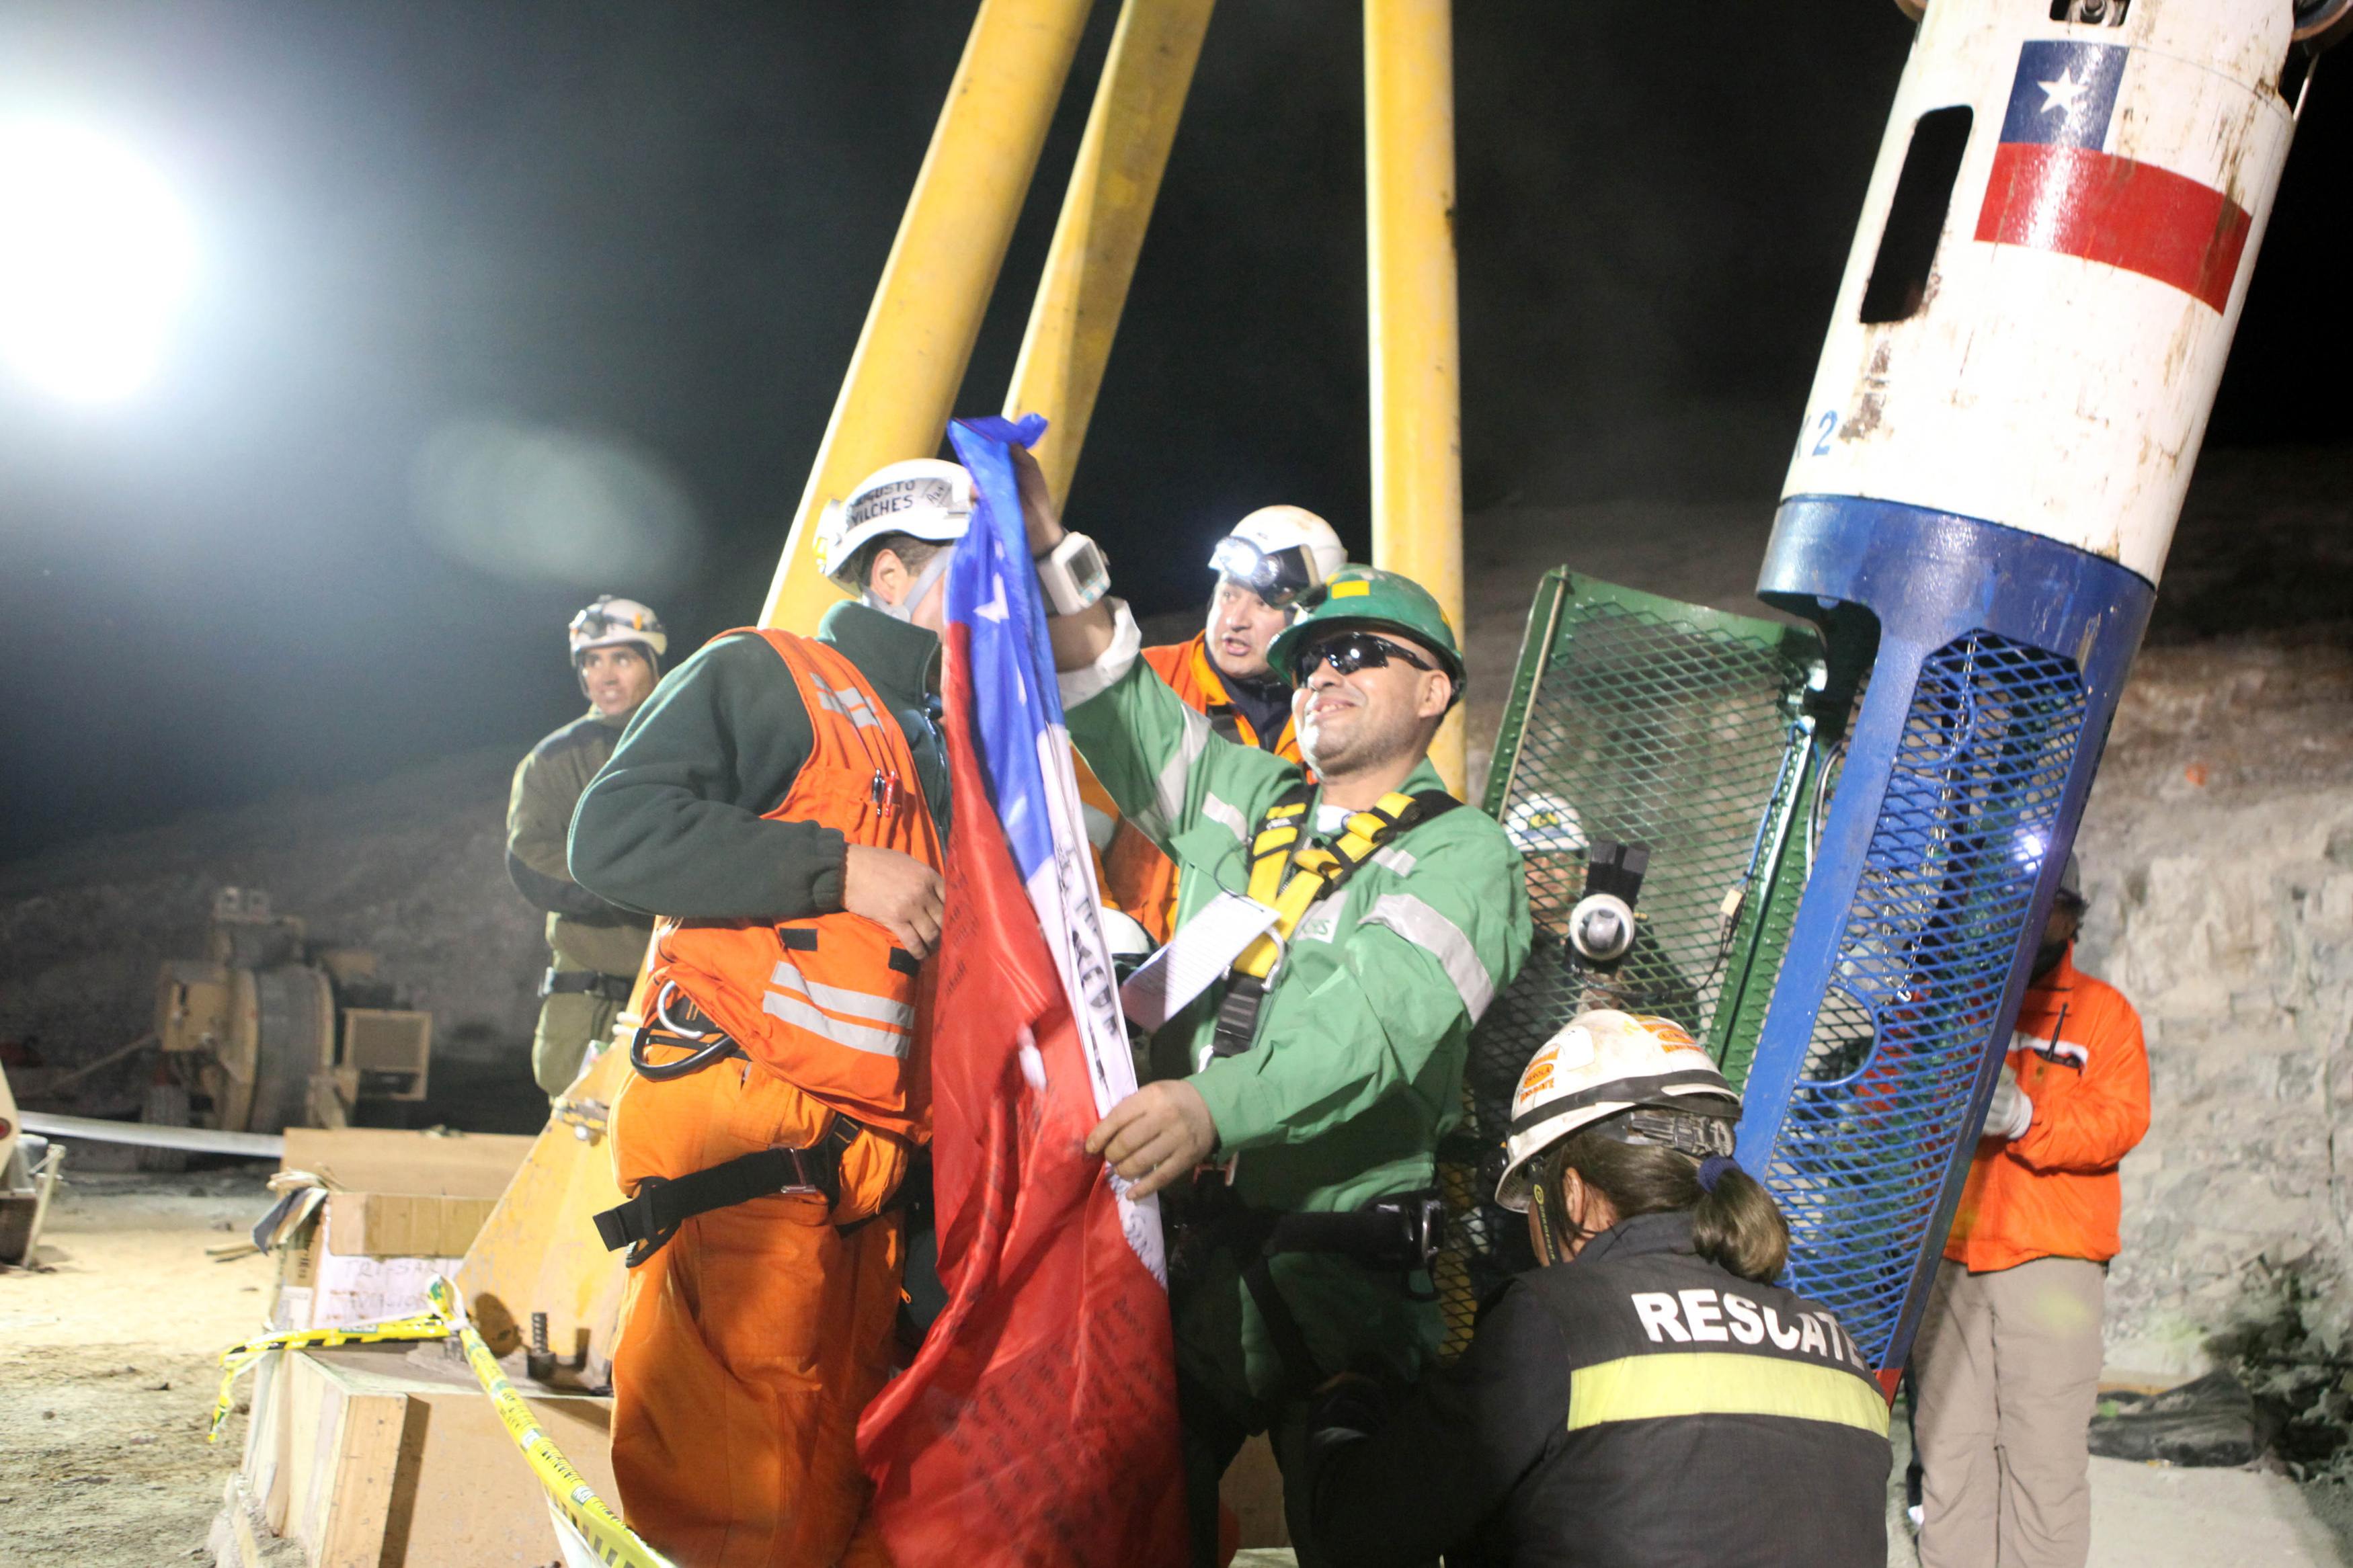 Πρώτες στιγμές ελευθερίας και ο Χοσέ Οχέδα υψώνει τη σημαία της Χιλής - ΦΩΤΟ REUTERS